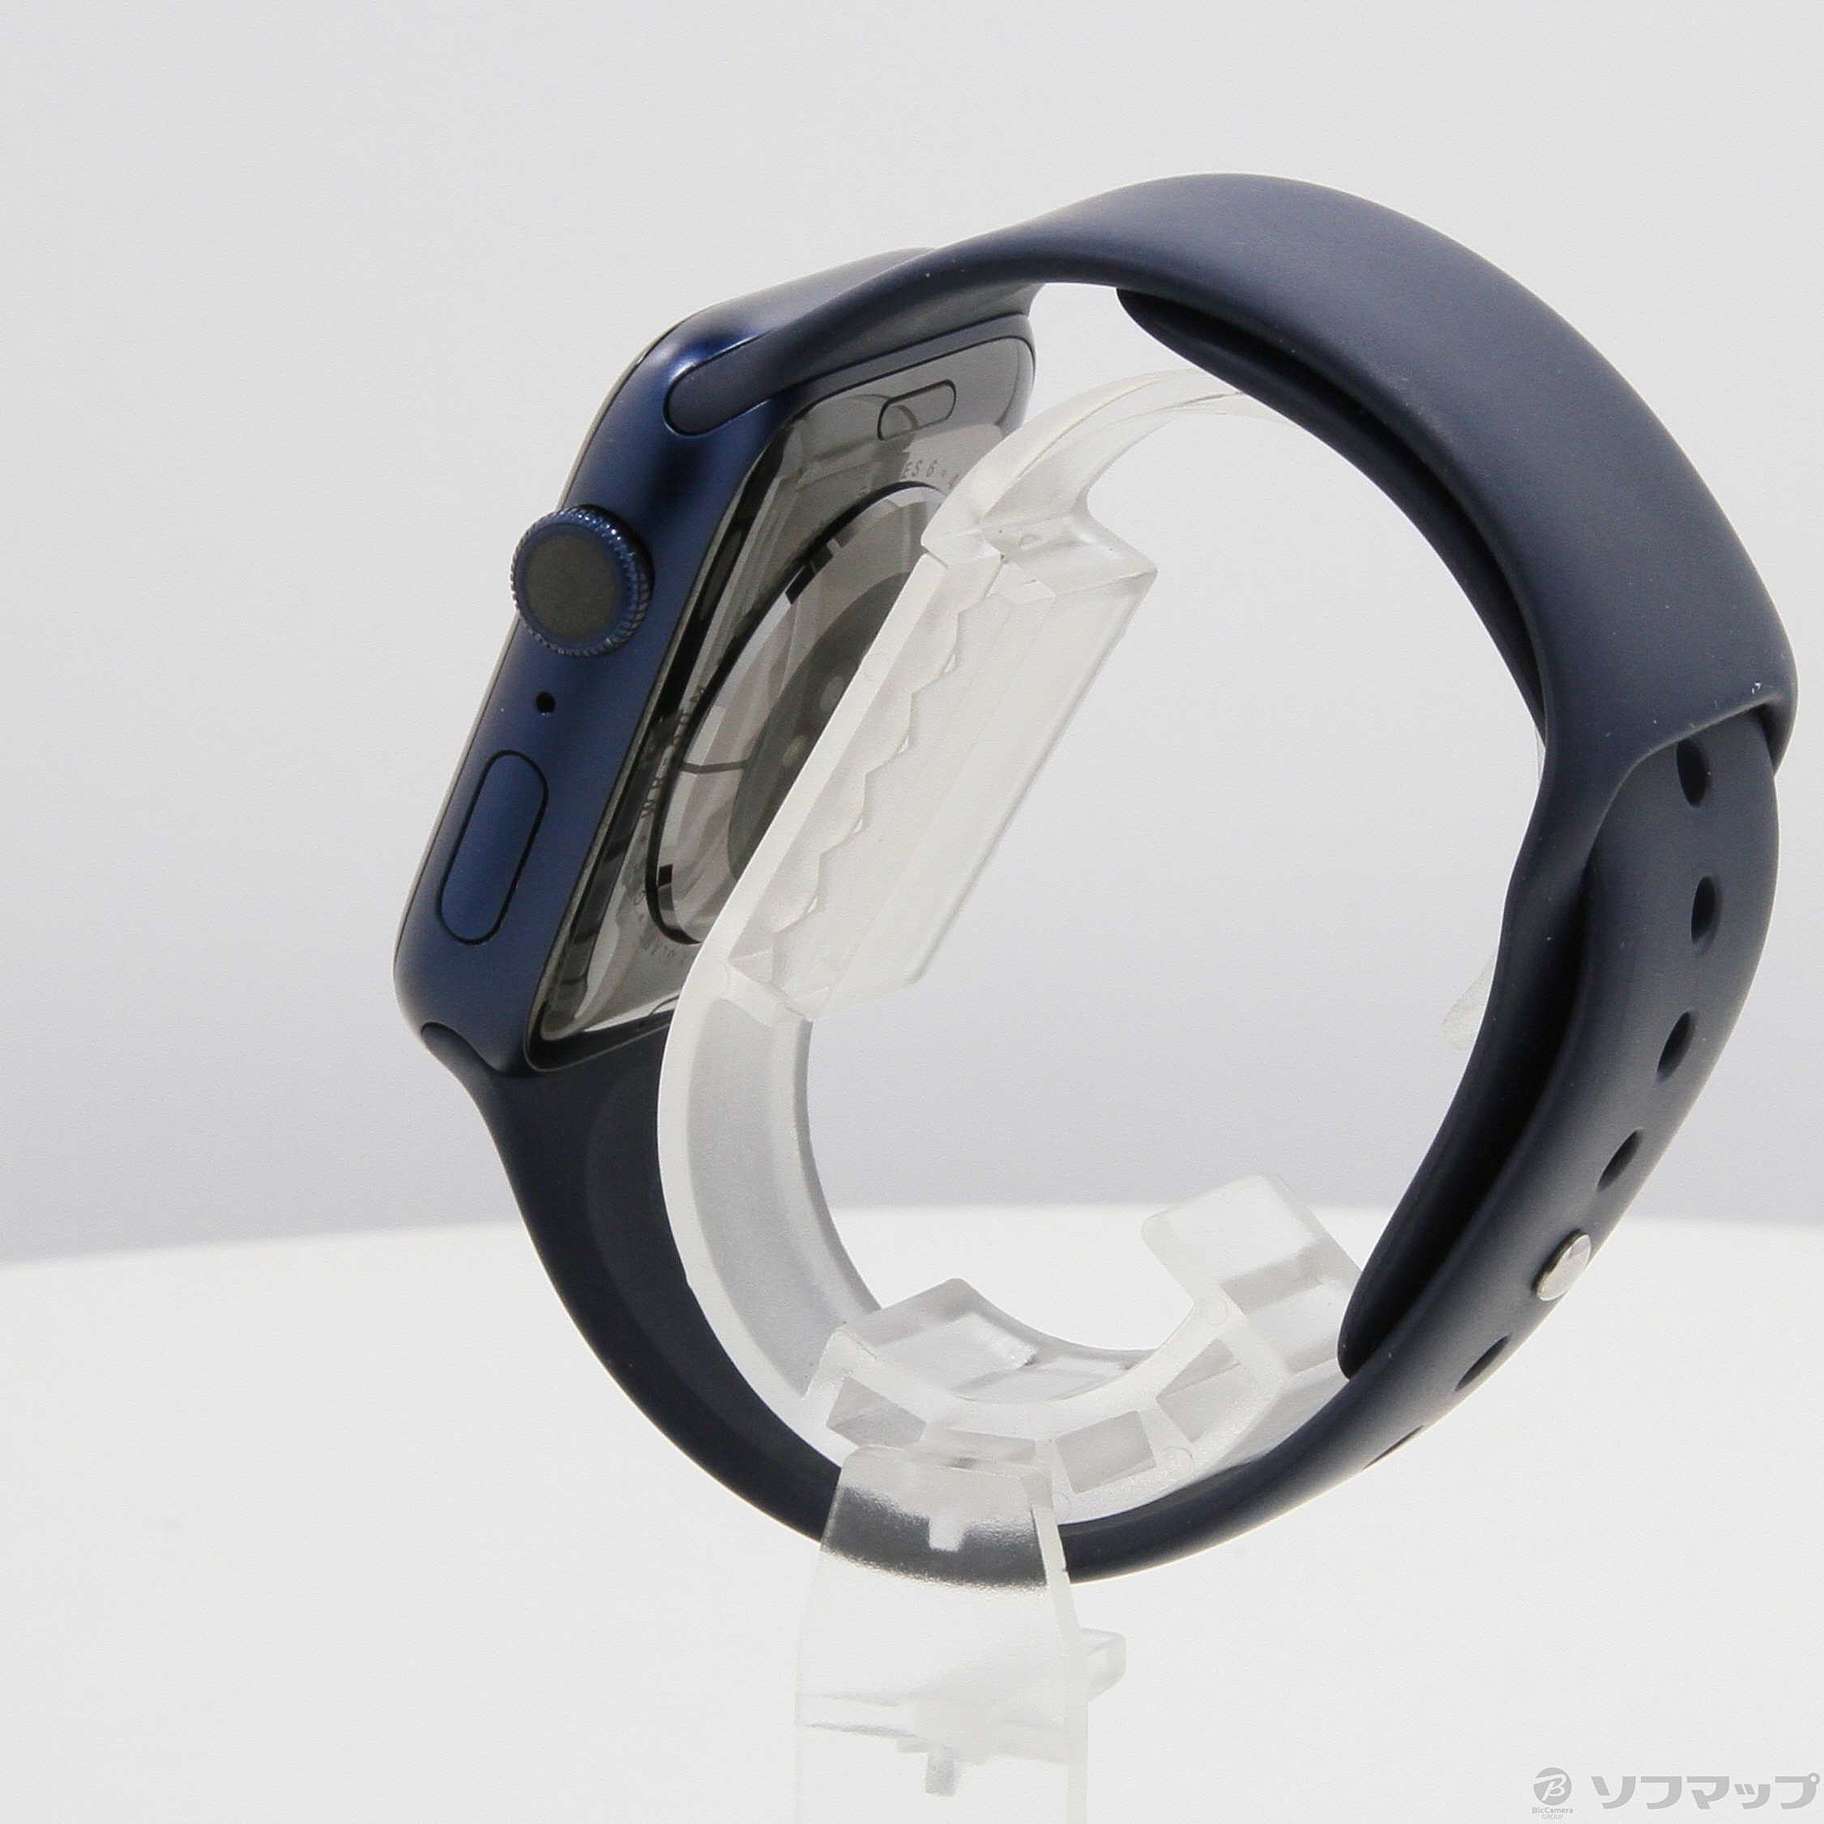 Apple(アップル) Apple Watch Series 6 GPS 44mm ブルーアルミニウム